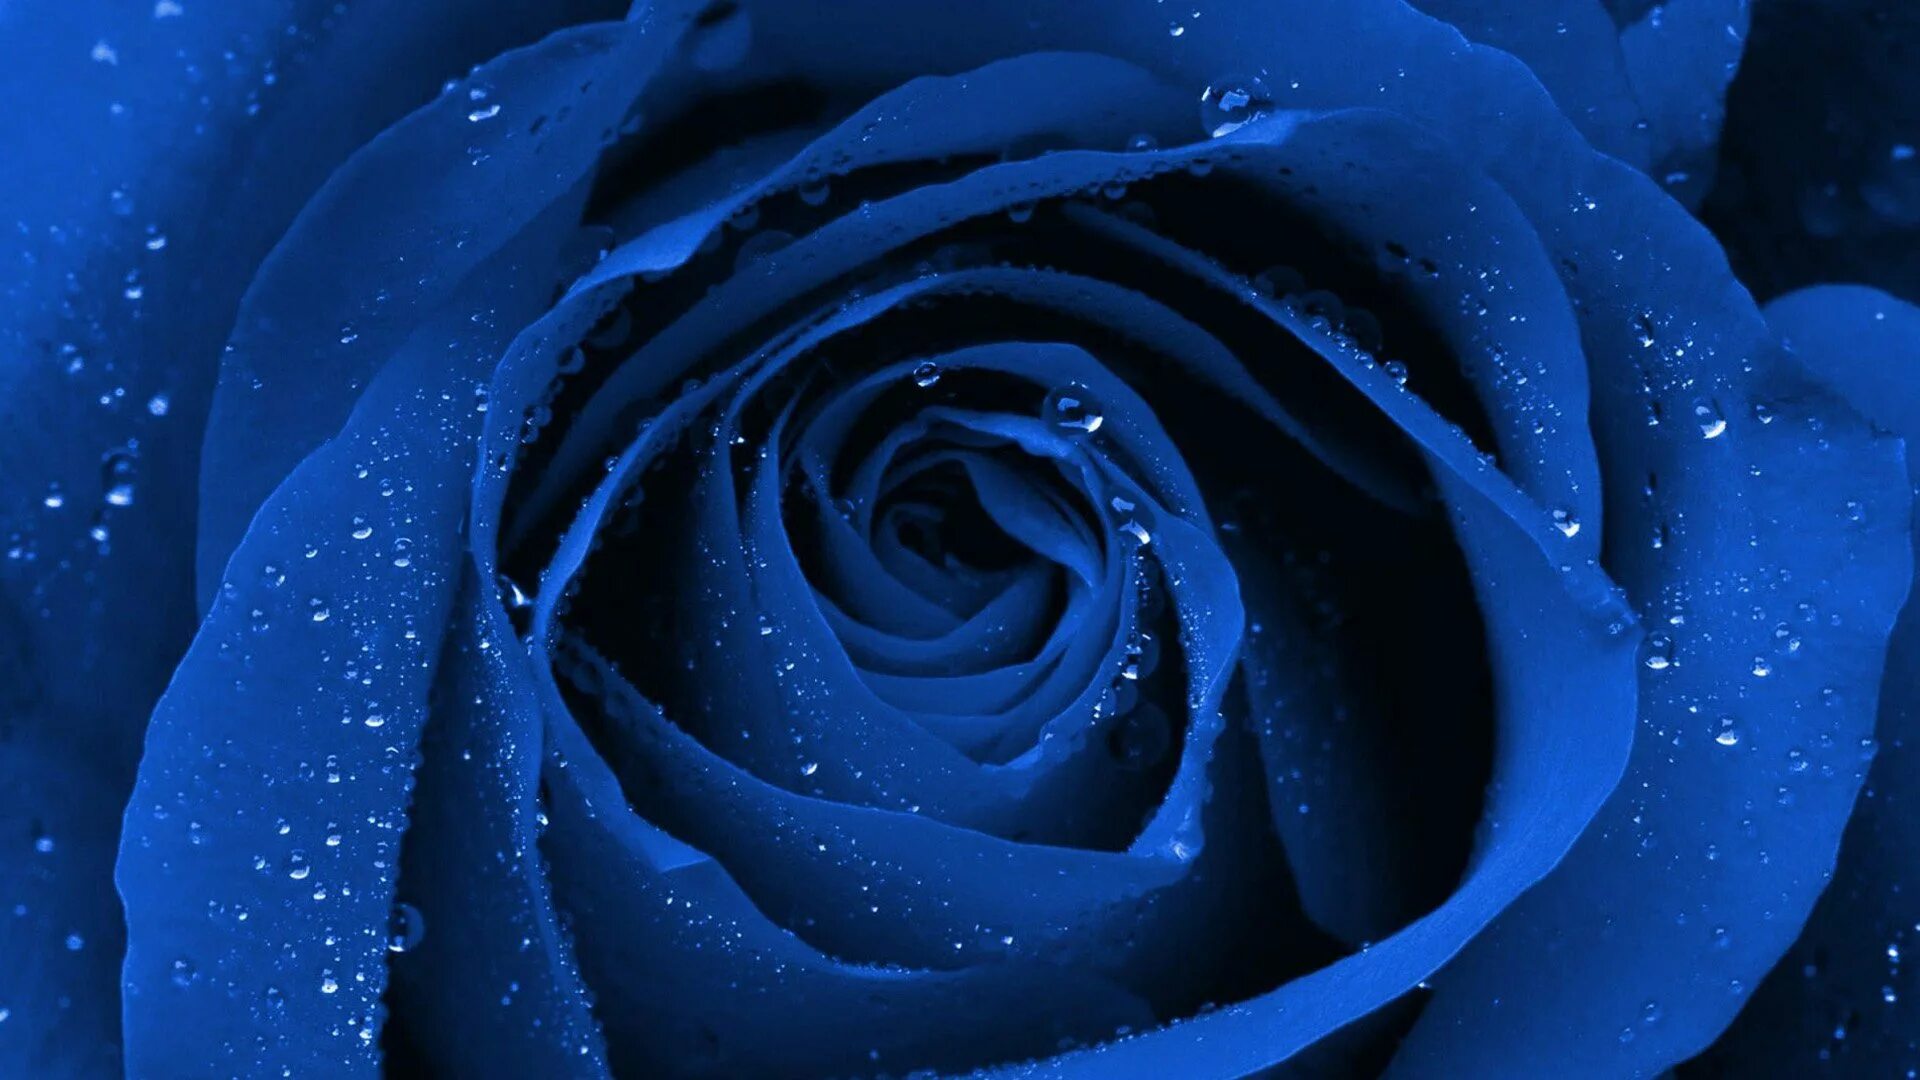 Синий раз. Синяя роза. Синие розы хд. Голубая роза красивая с каплями. Красивые синие розы обои.